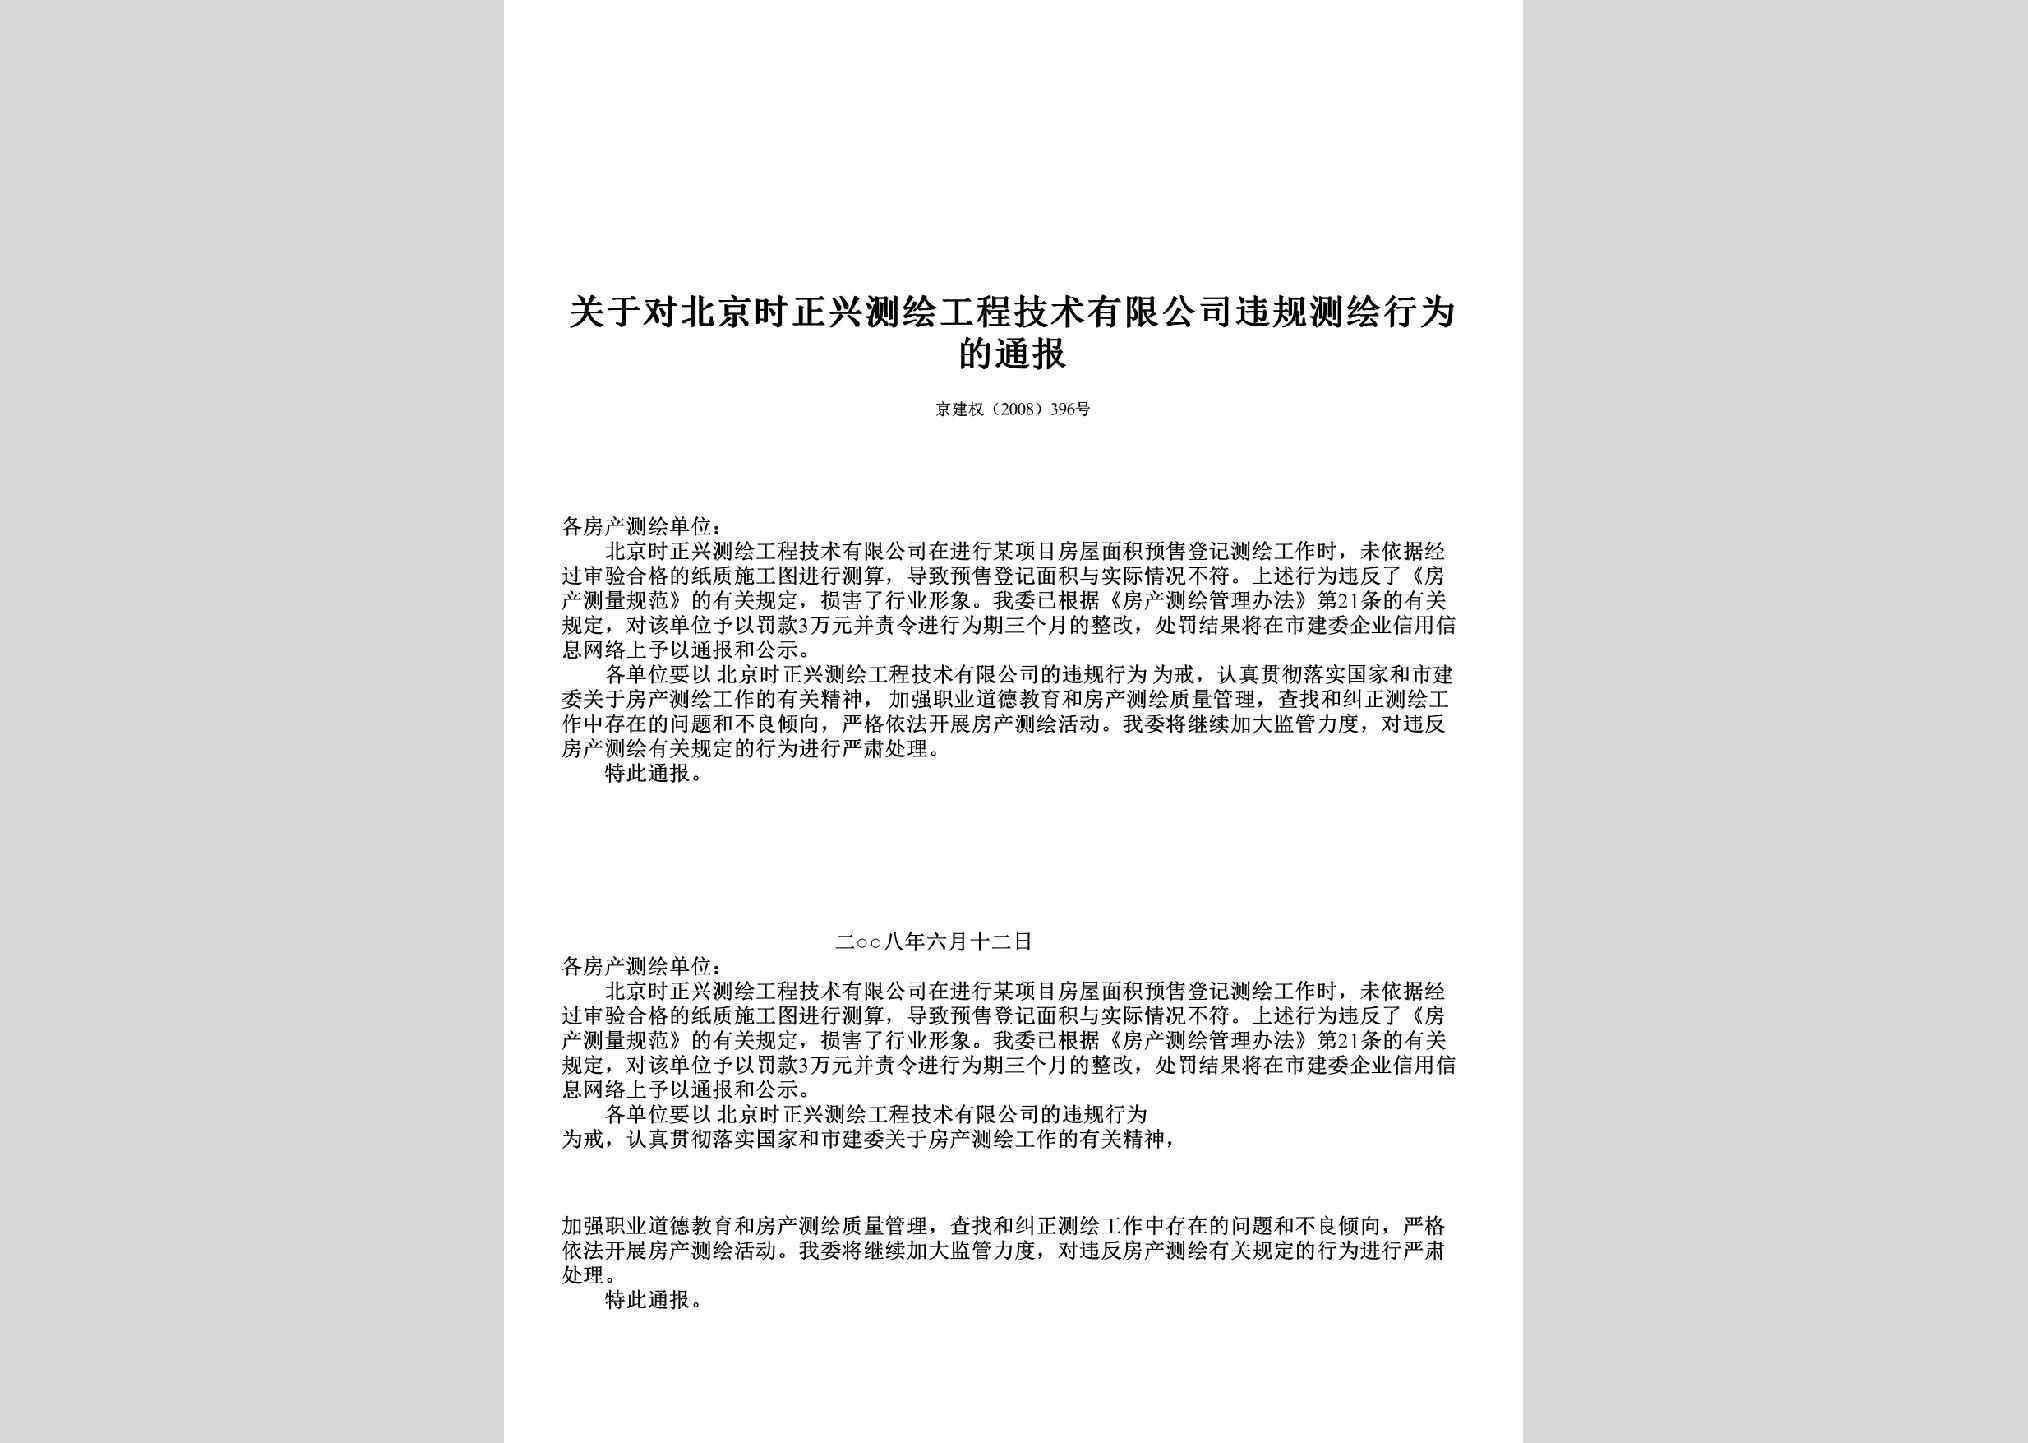 京建权[2008]396号：关于对北京时正兴测绘工程技术有限公司违规测绘行为的通报